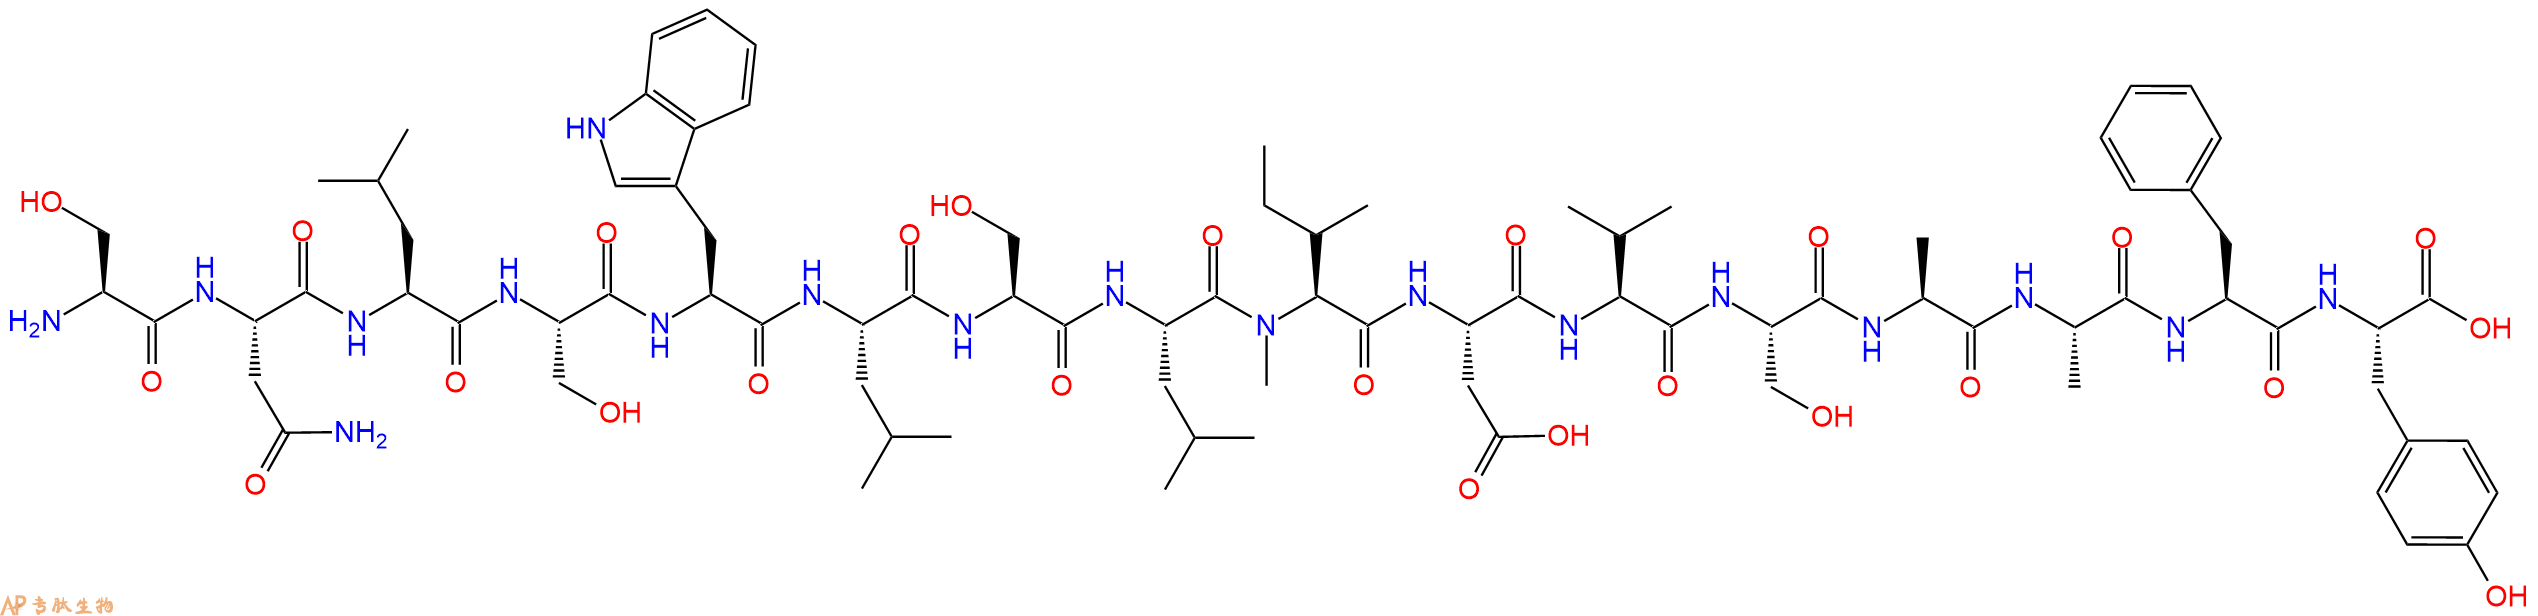 专肽生物产品H2N-Ser-Asn-Leu-Ser-Trp-Leu-Ser-Leu-(NMe)Ile-Asp-V